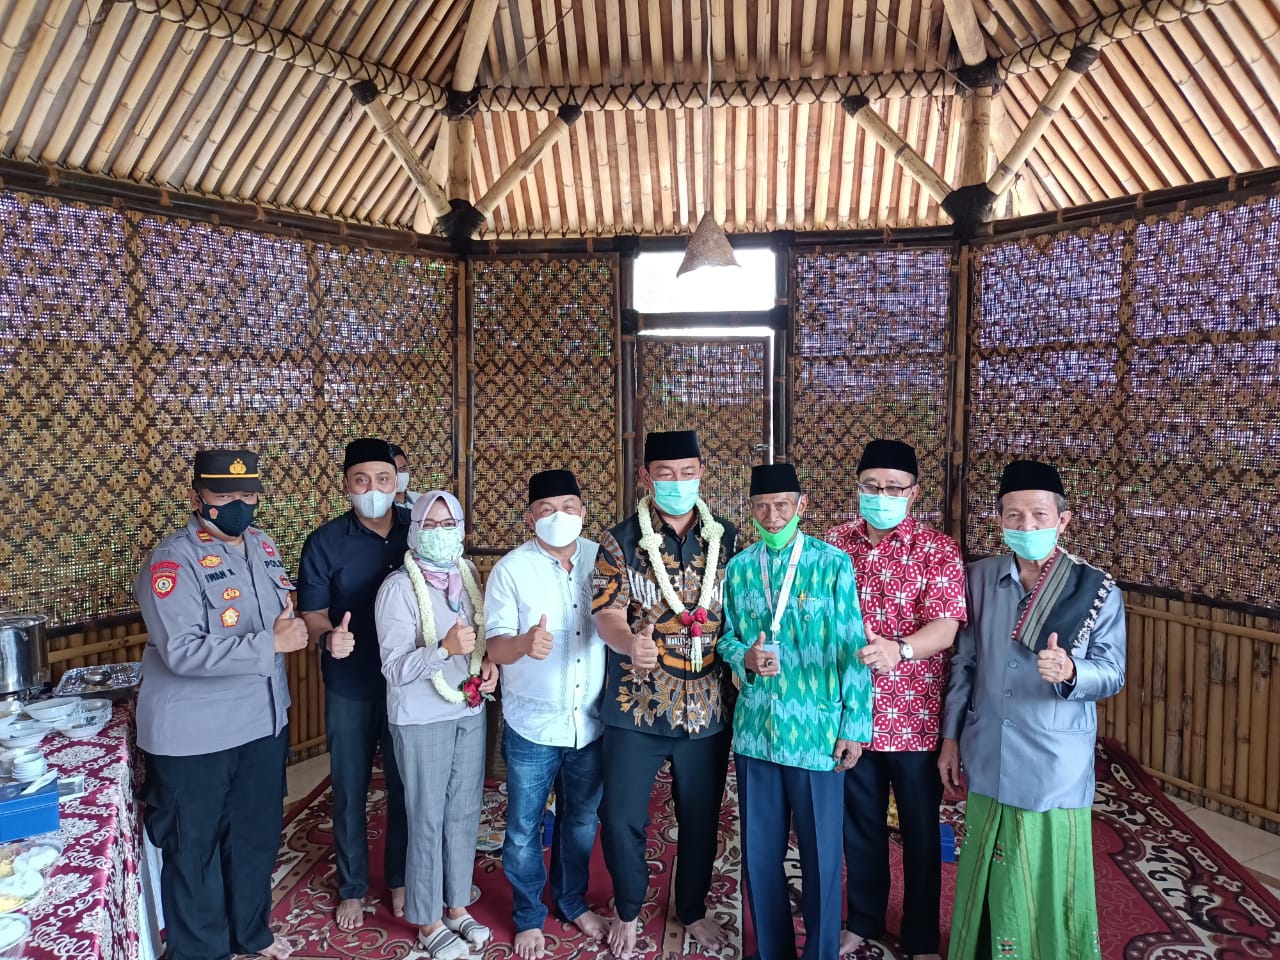 Sekaligus Wisata Sejarah, Safari Jumat di Masjid Kompleks Stasiun Pertama Di Indonesia